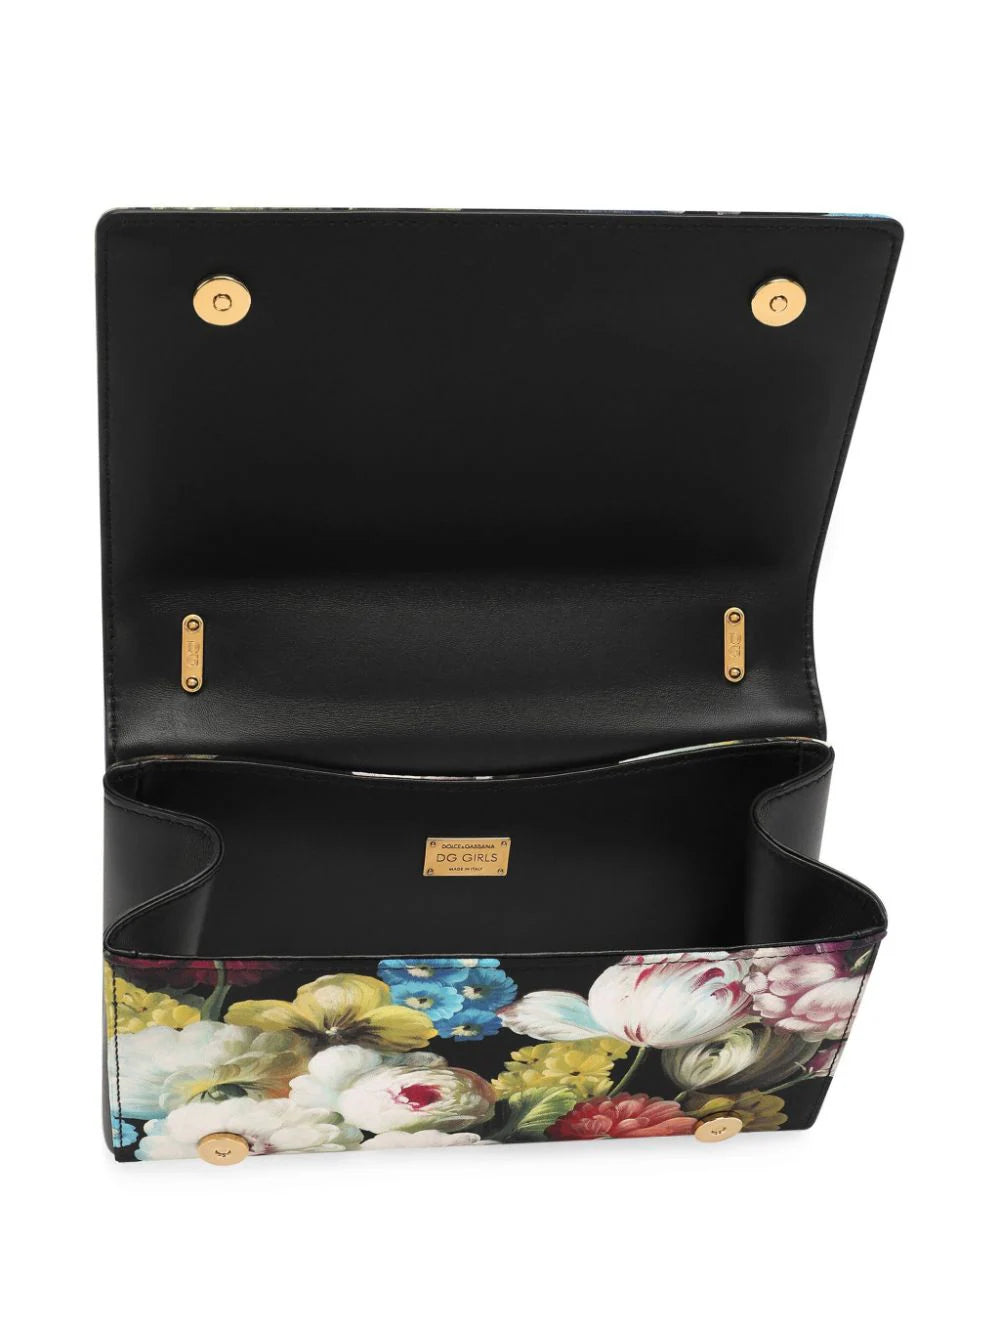 Dolce &amp; Gabbana DG Girls Floral Bag